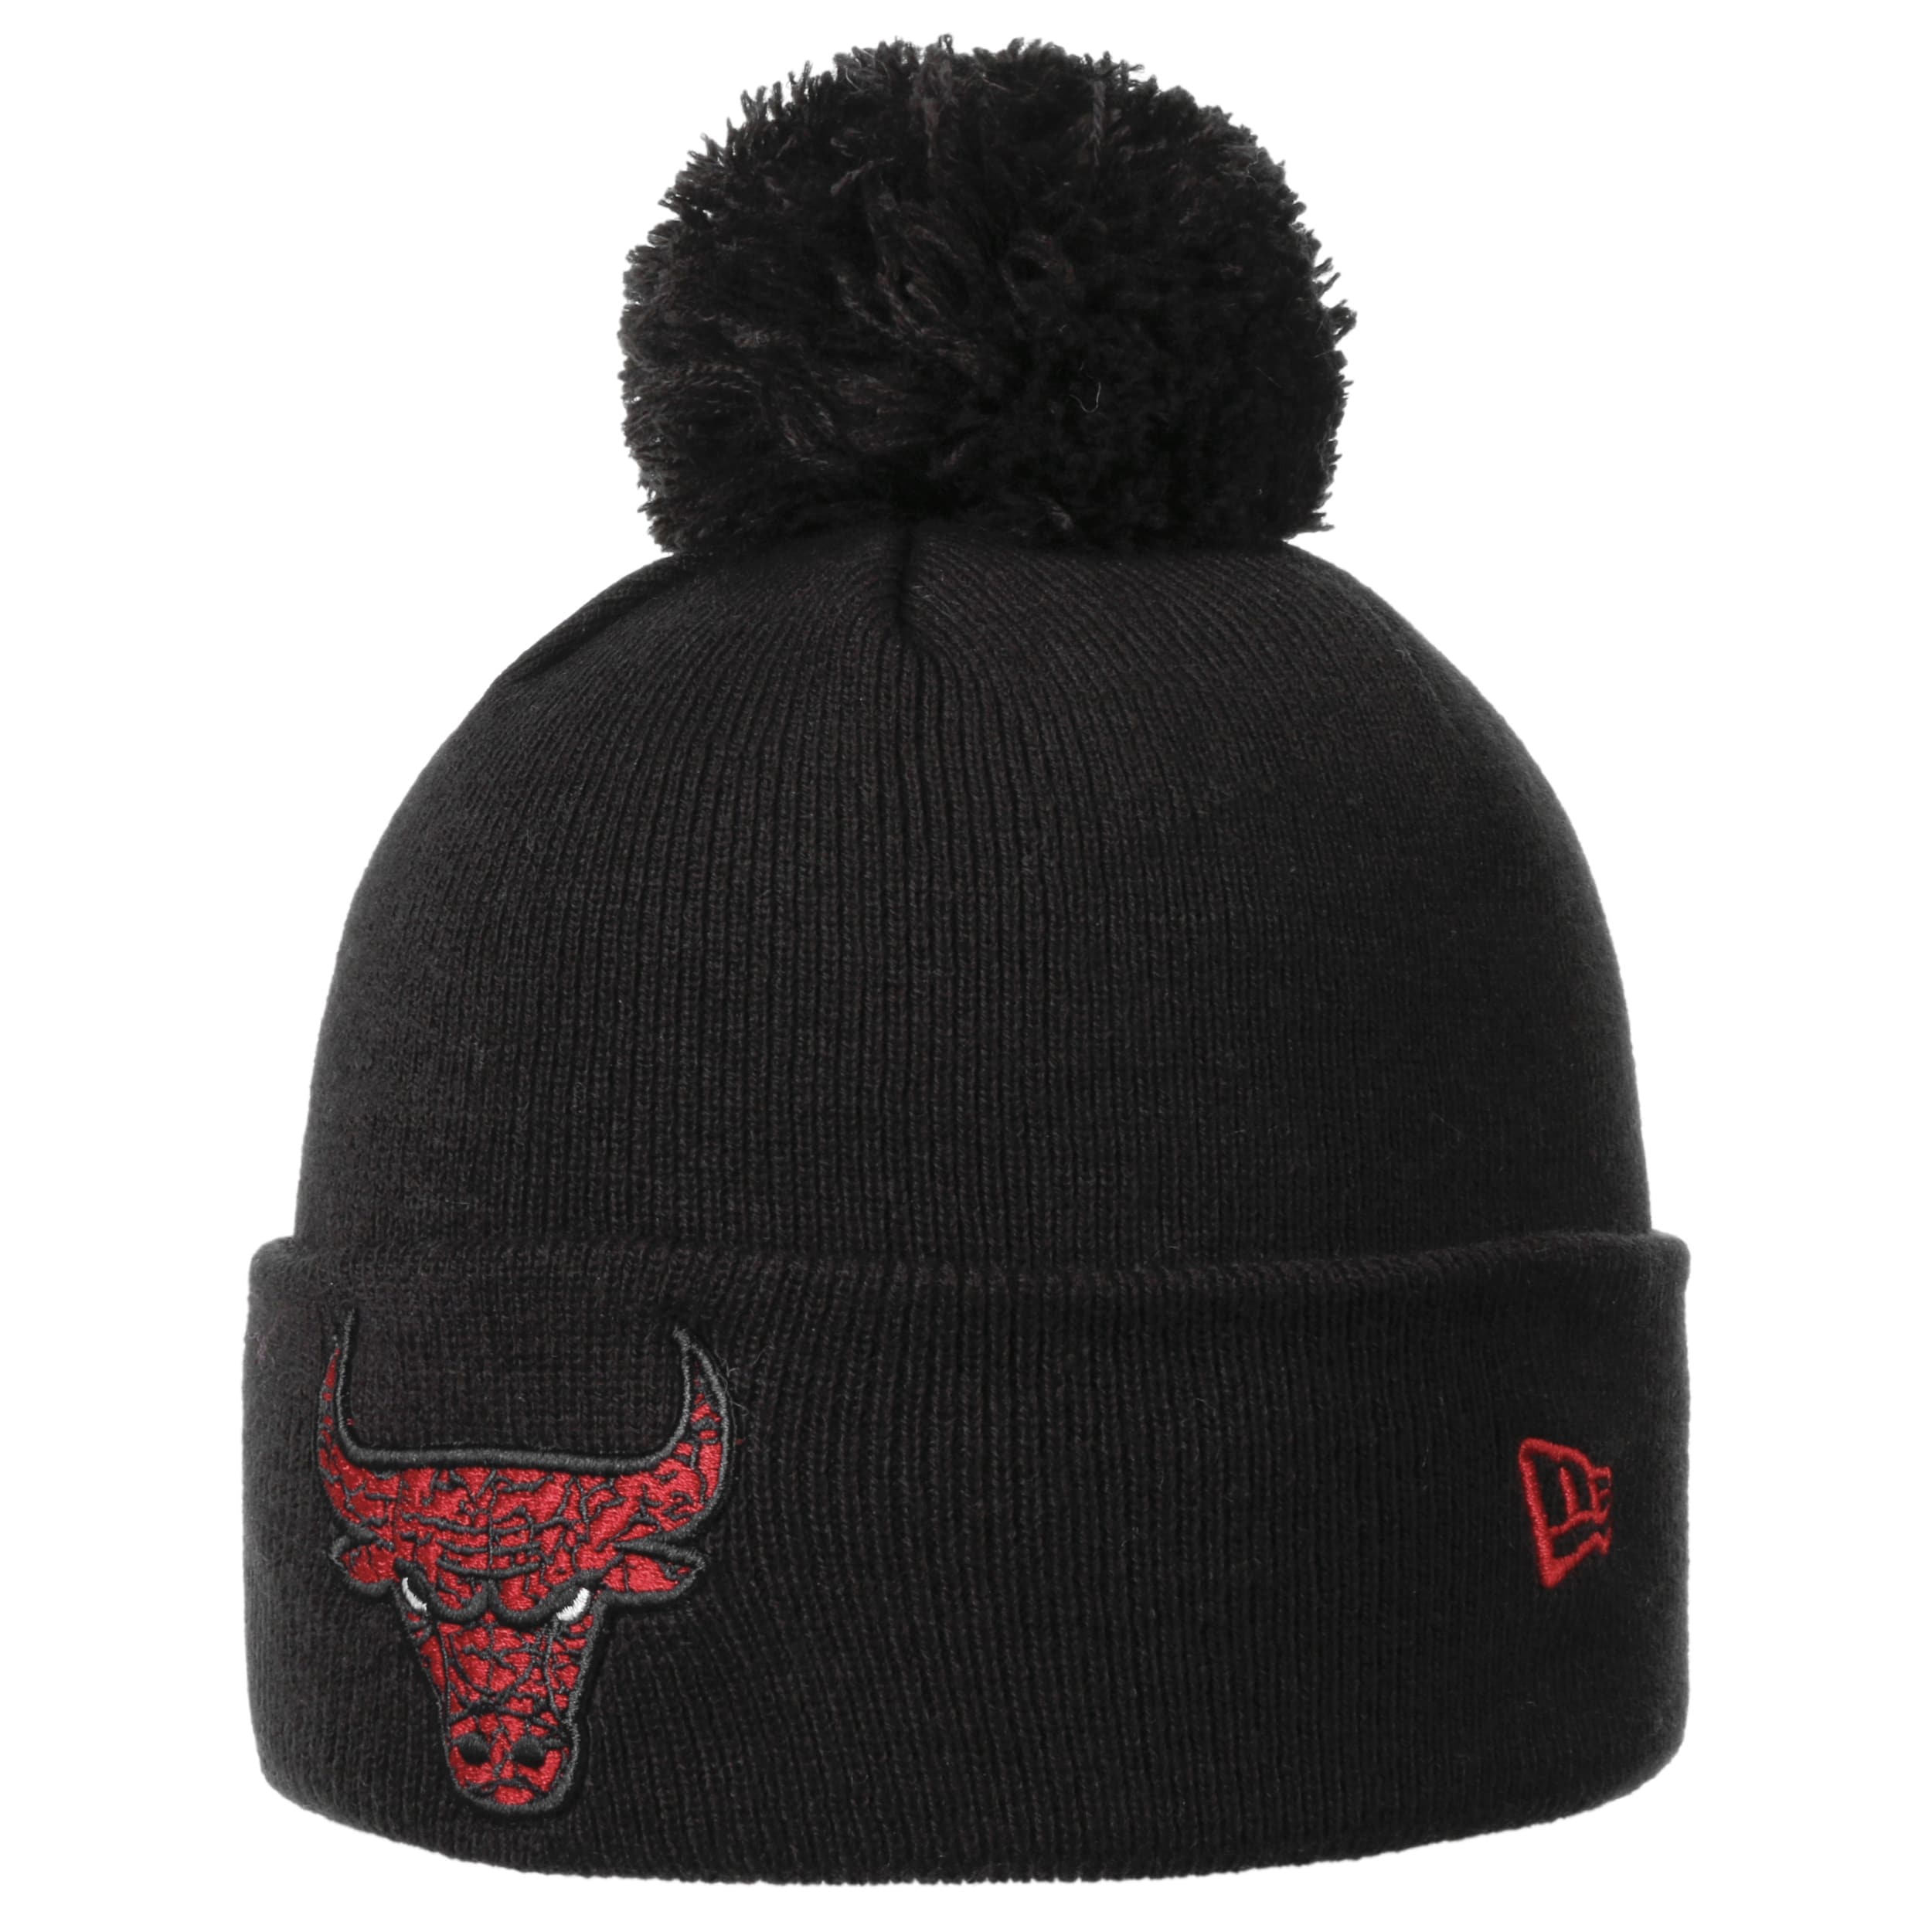 bevind zich Het koud krijgen Droogte NBA Bulls Infill Bobble Beanie Hat by New Era - 32,95 €